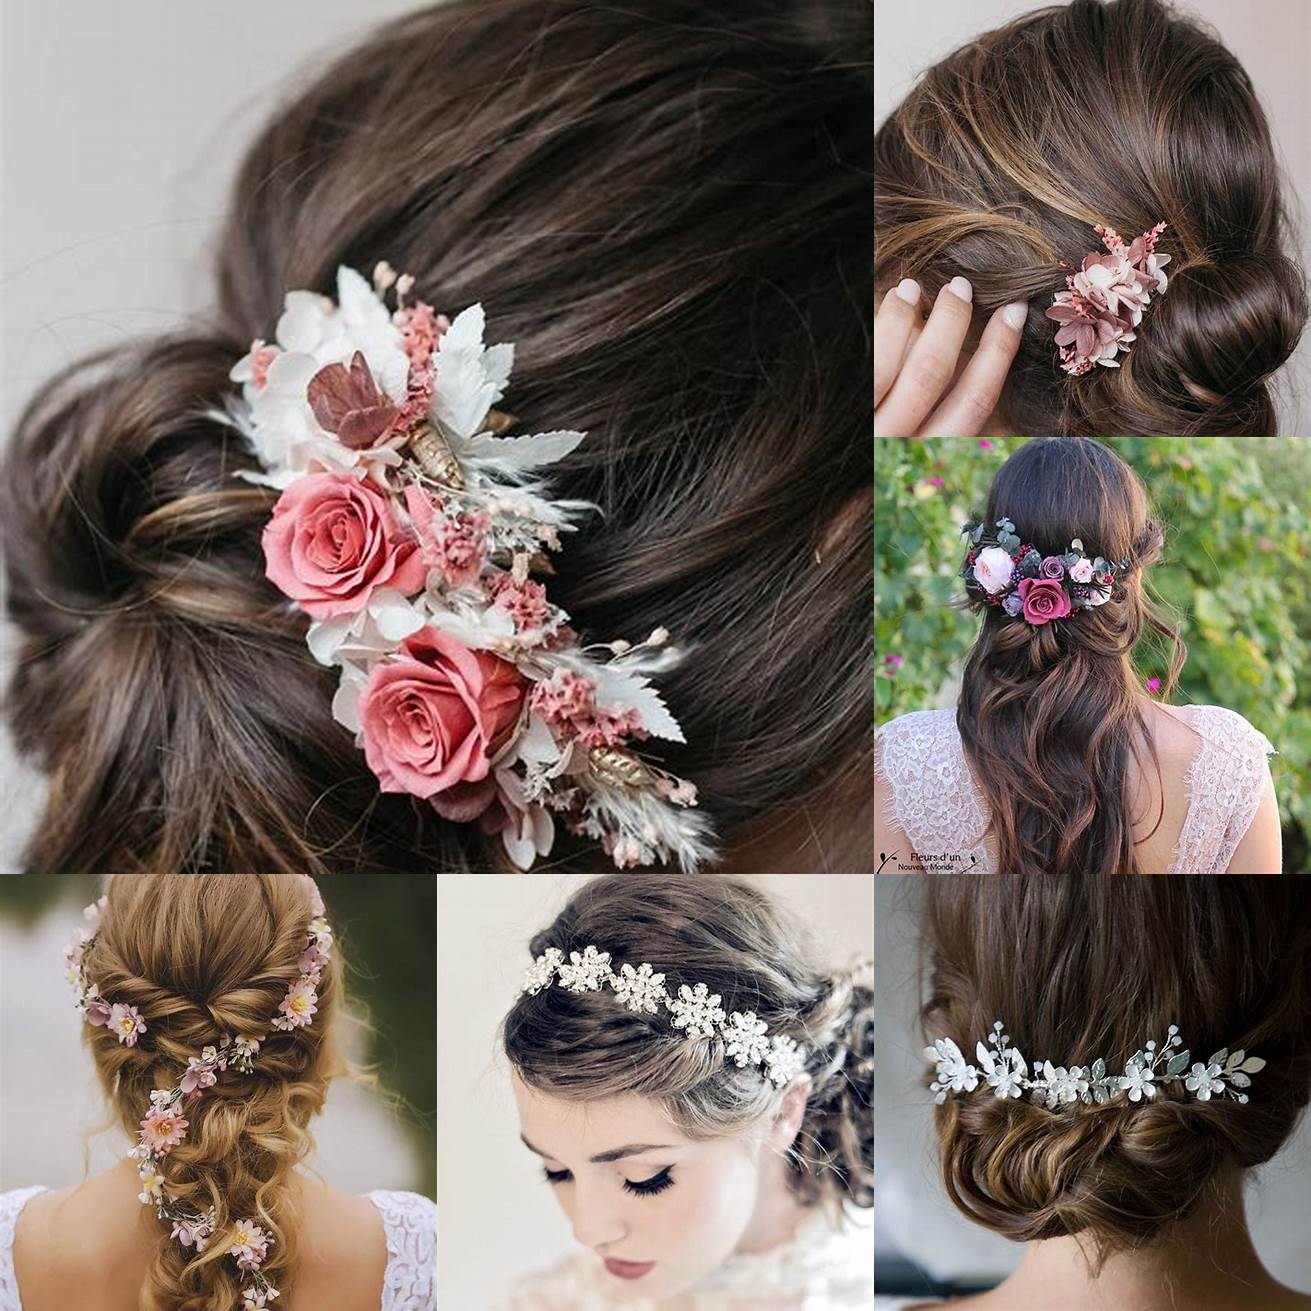 Fleurs - Les fleurs sont un autre accessoire populaire pour les cheveux de mariage Vous pouvez choisir des fleurs fraîches ou des fleurs artificielles pour ajouter une touche de couleur et de fraîcheur à votre coiffure